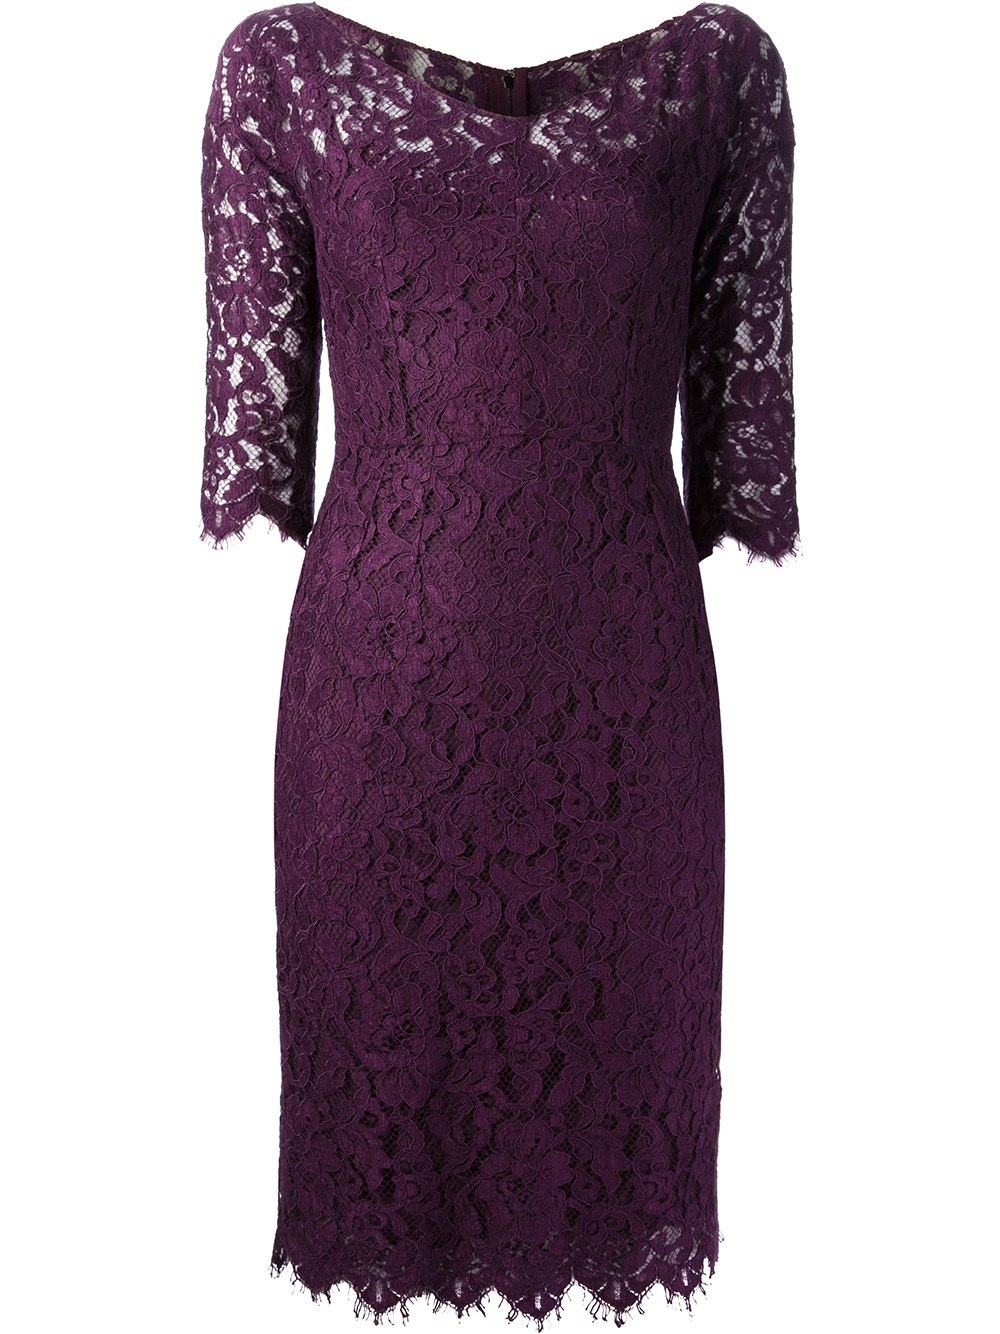 Dolce & Gabbana Lace Dress in Pink & Purple (Purple) - Lyst